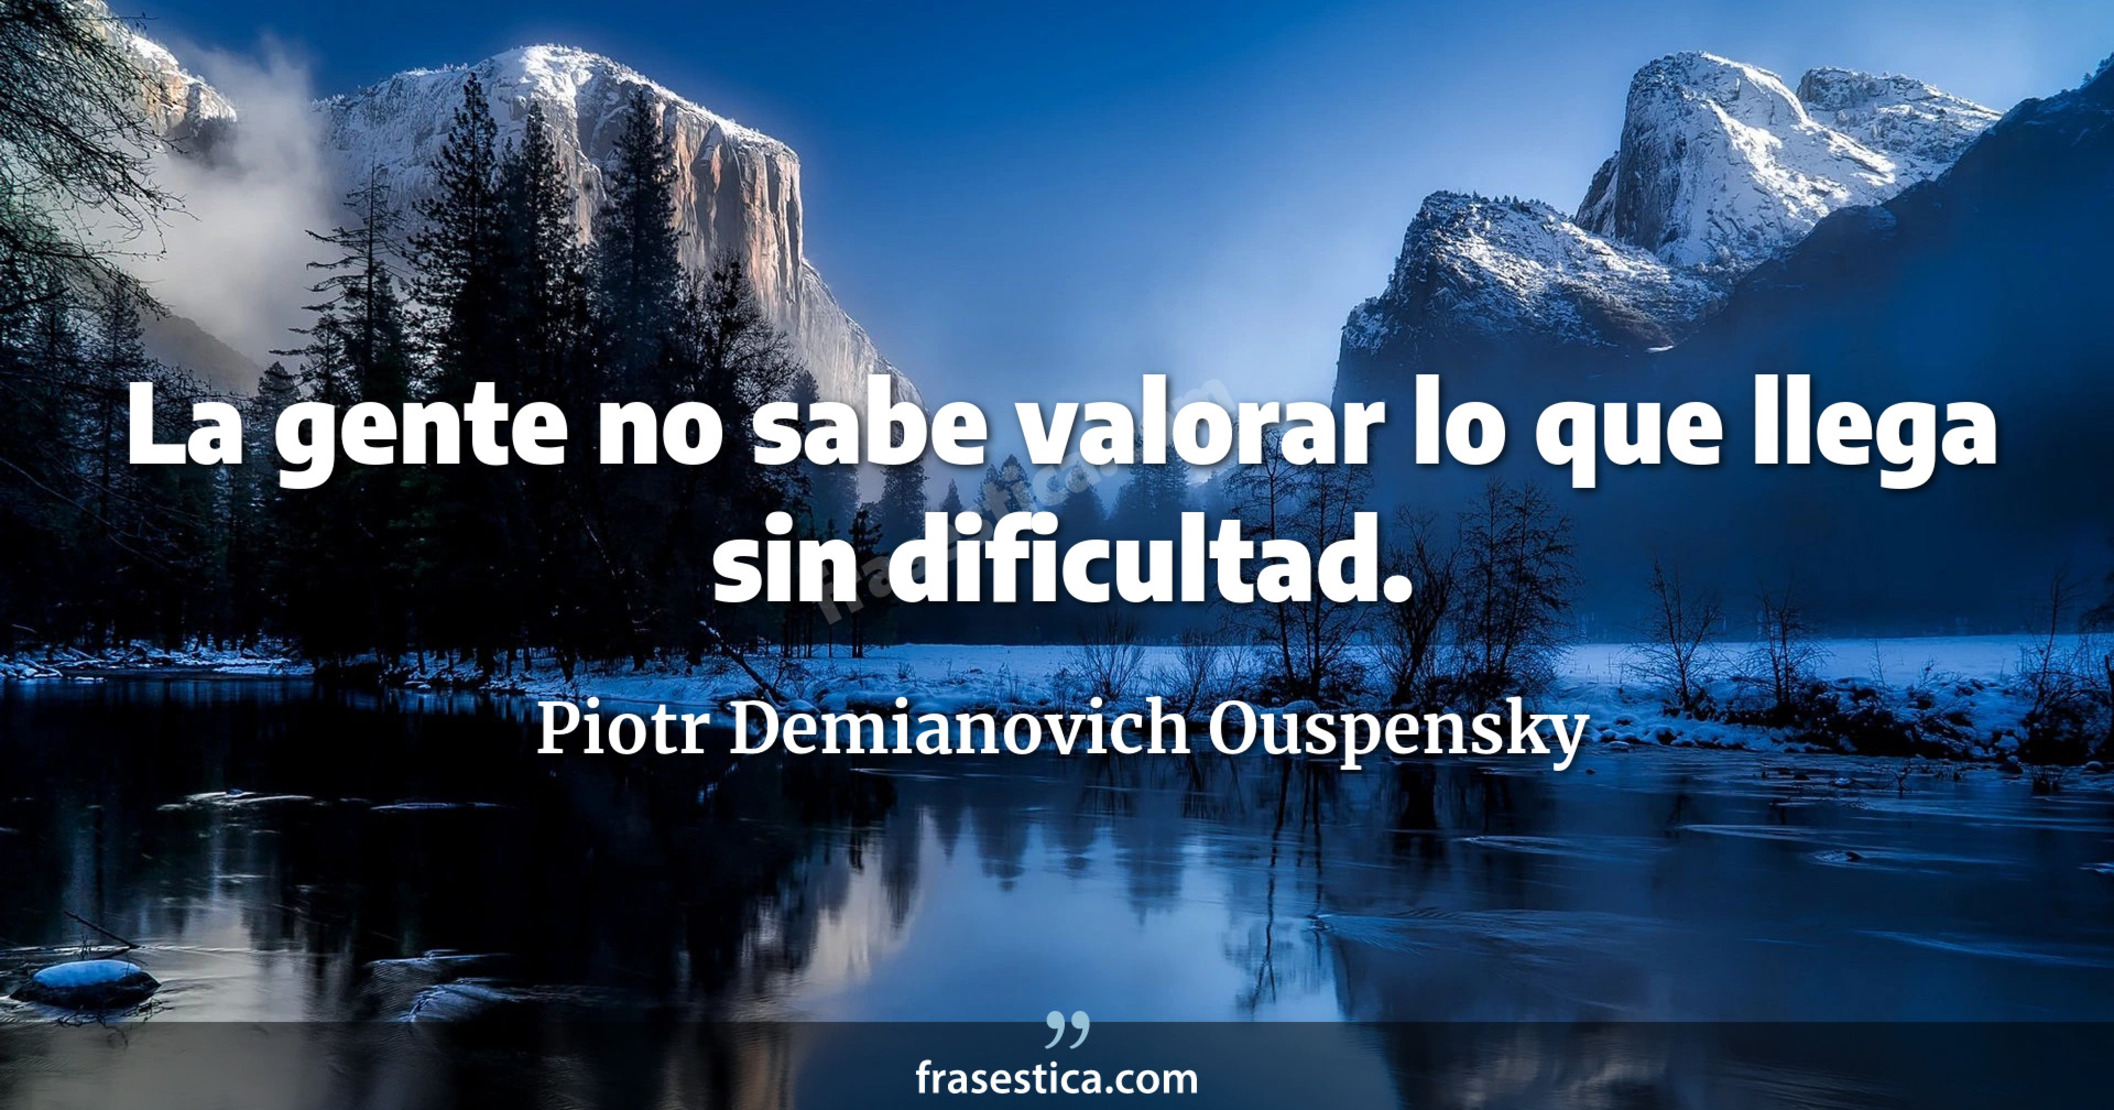 La gente no sabe valorar lo que llega sin dificultad. - Piotr Demianovich Ouspensky